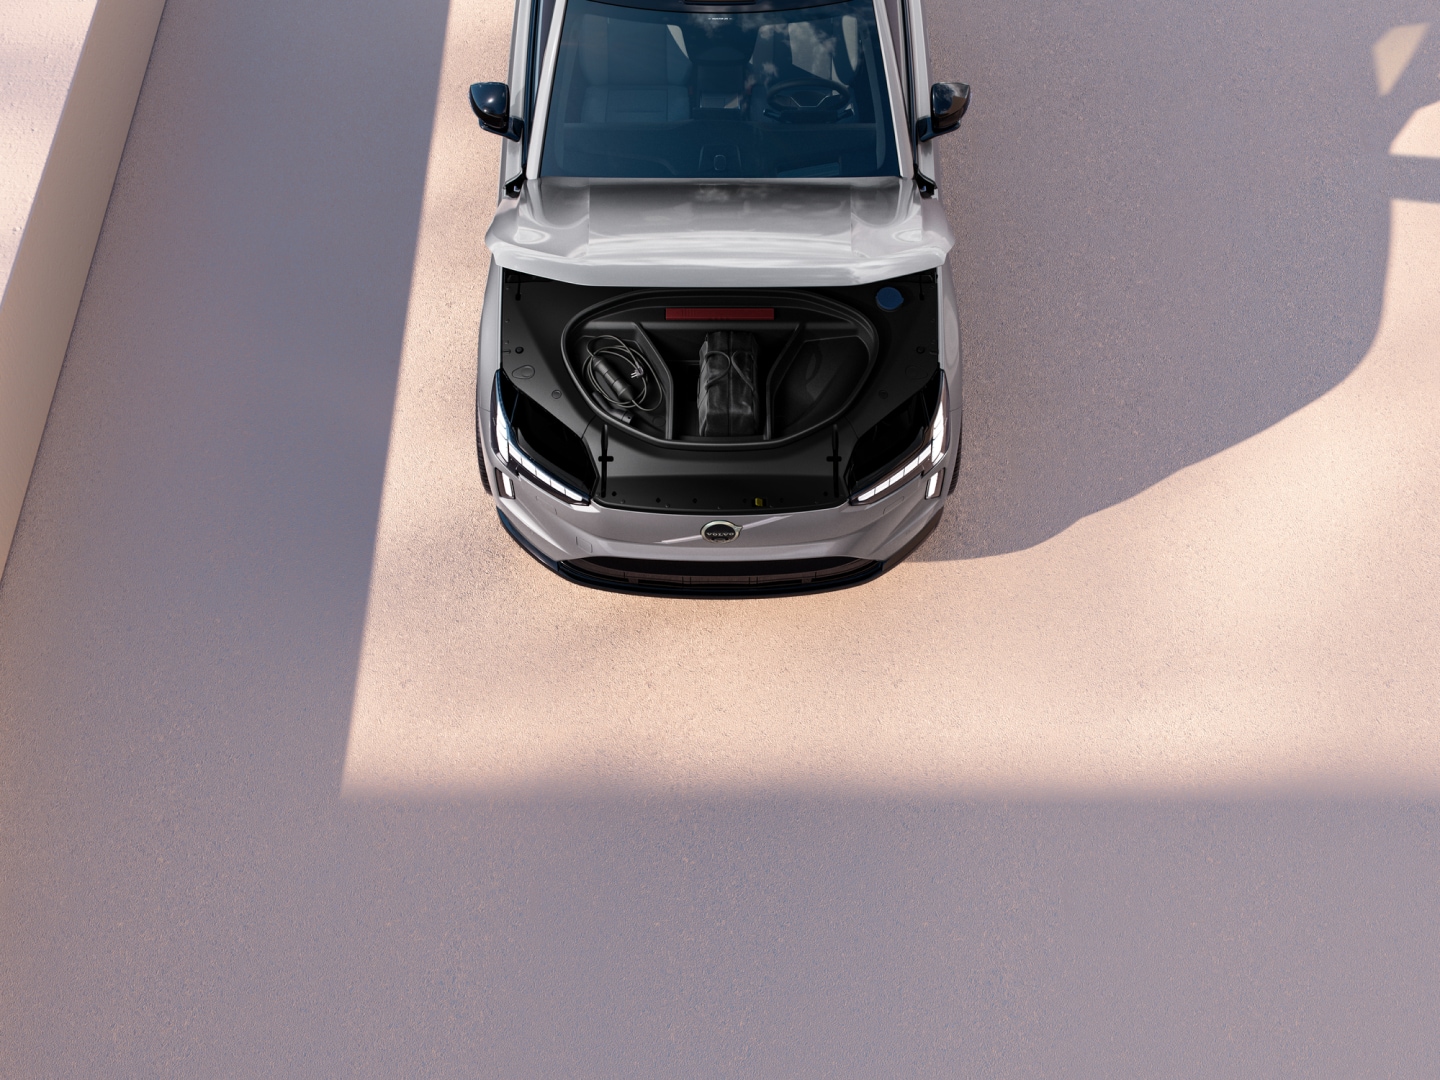 Almacenamiento adicional en el "capó" del SUV Volvo EX90 eléctrico puro.